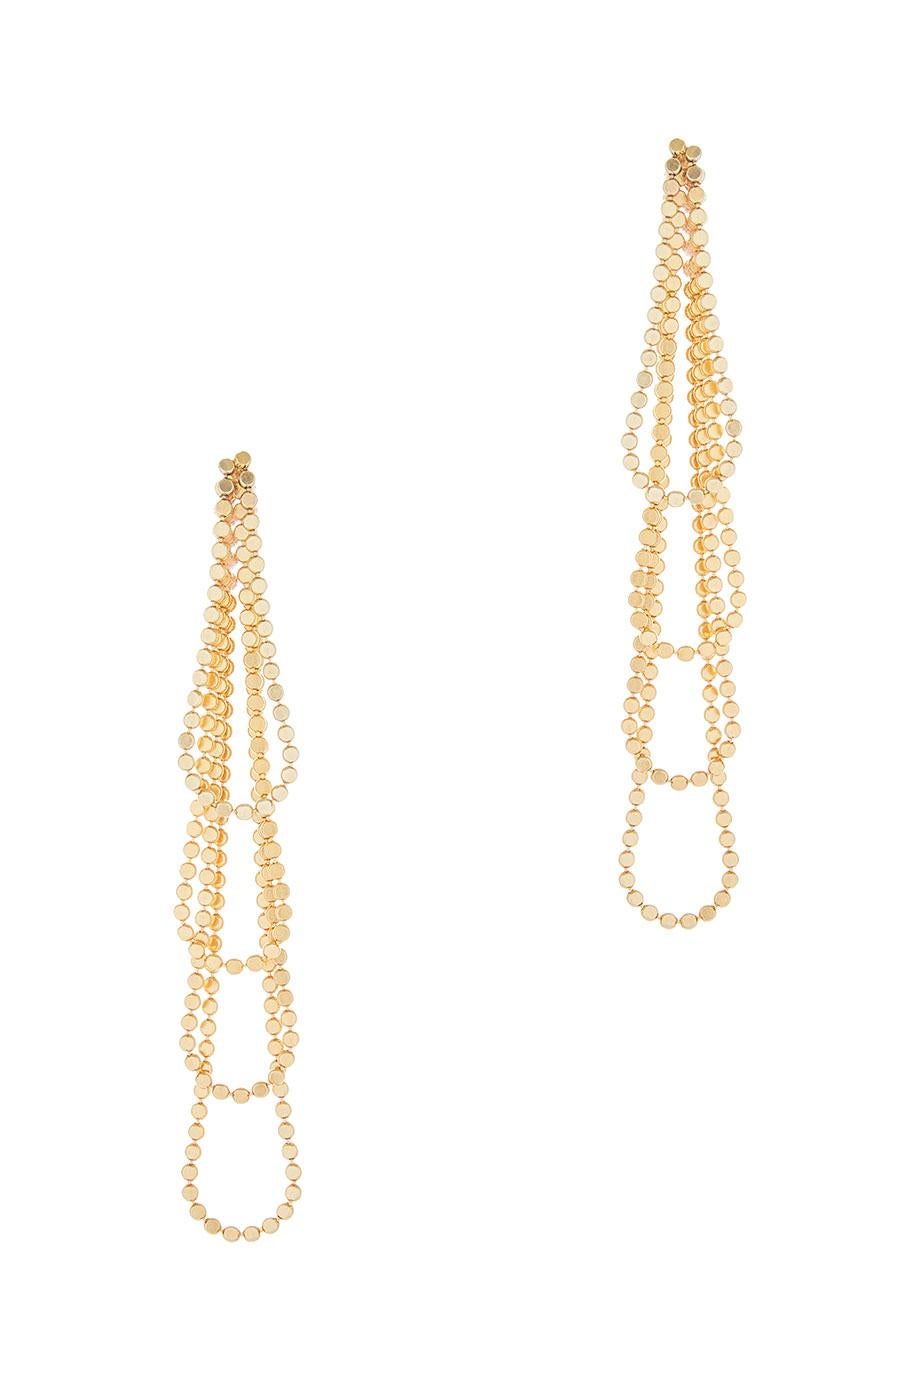 Smart Earrings Long Drop Round Motif Chain 18k Gold-Plated Silver Greek Earrings For Sale 3